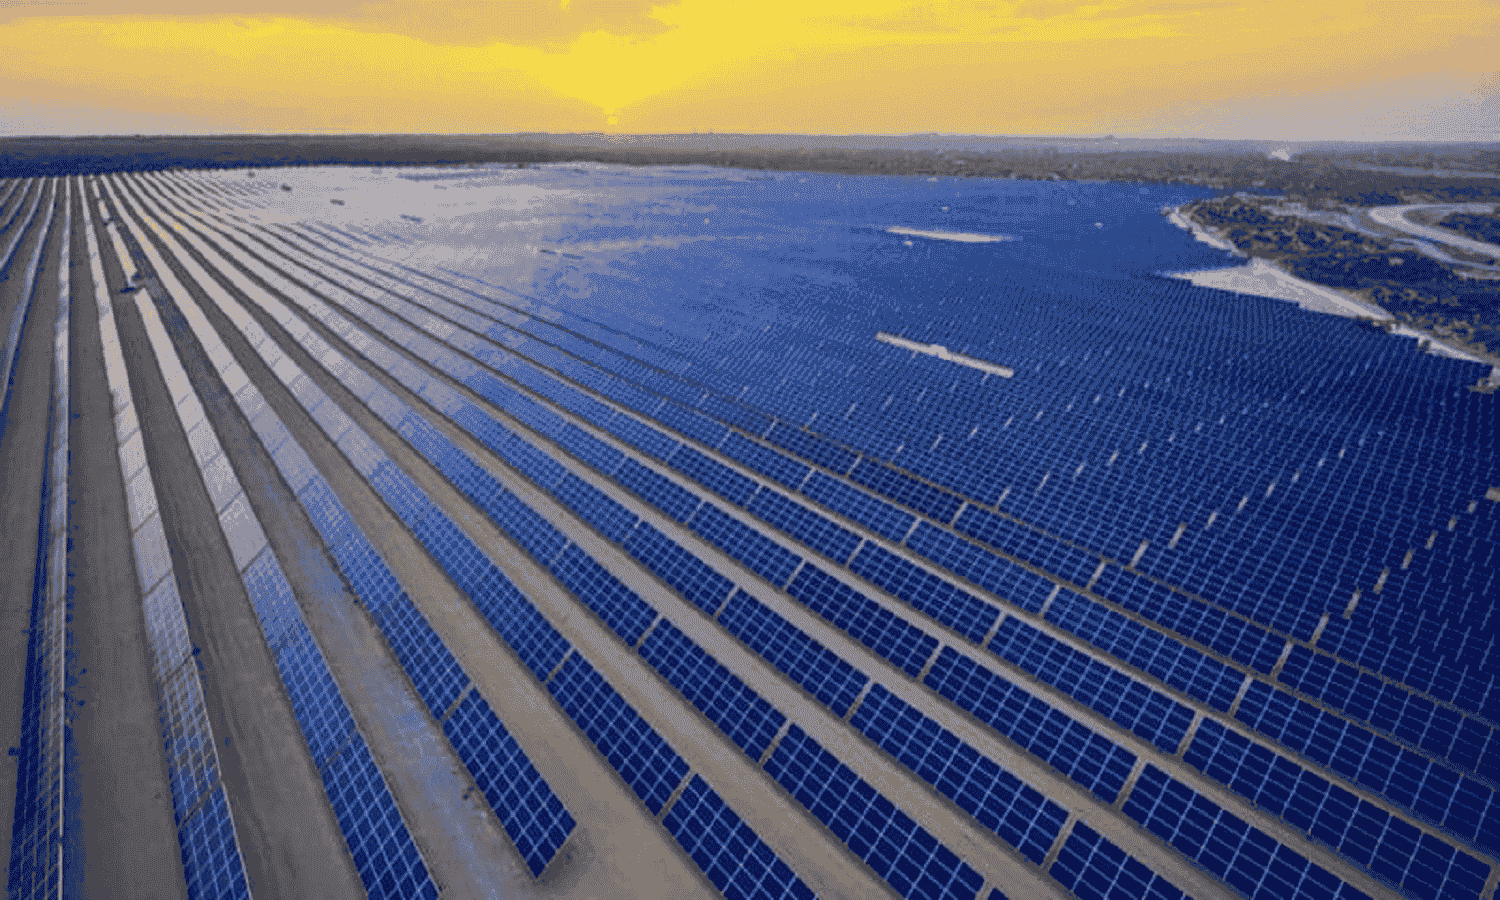 فوز محطة كوم امبو للطاقة الشمسية بجائزة صفقة العام في تحول الطاقة
